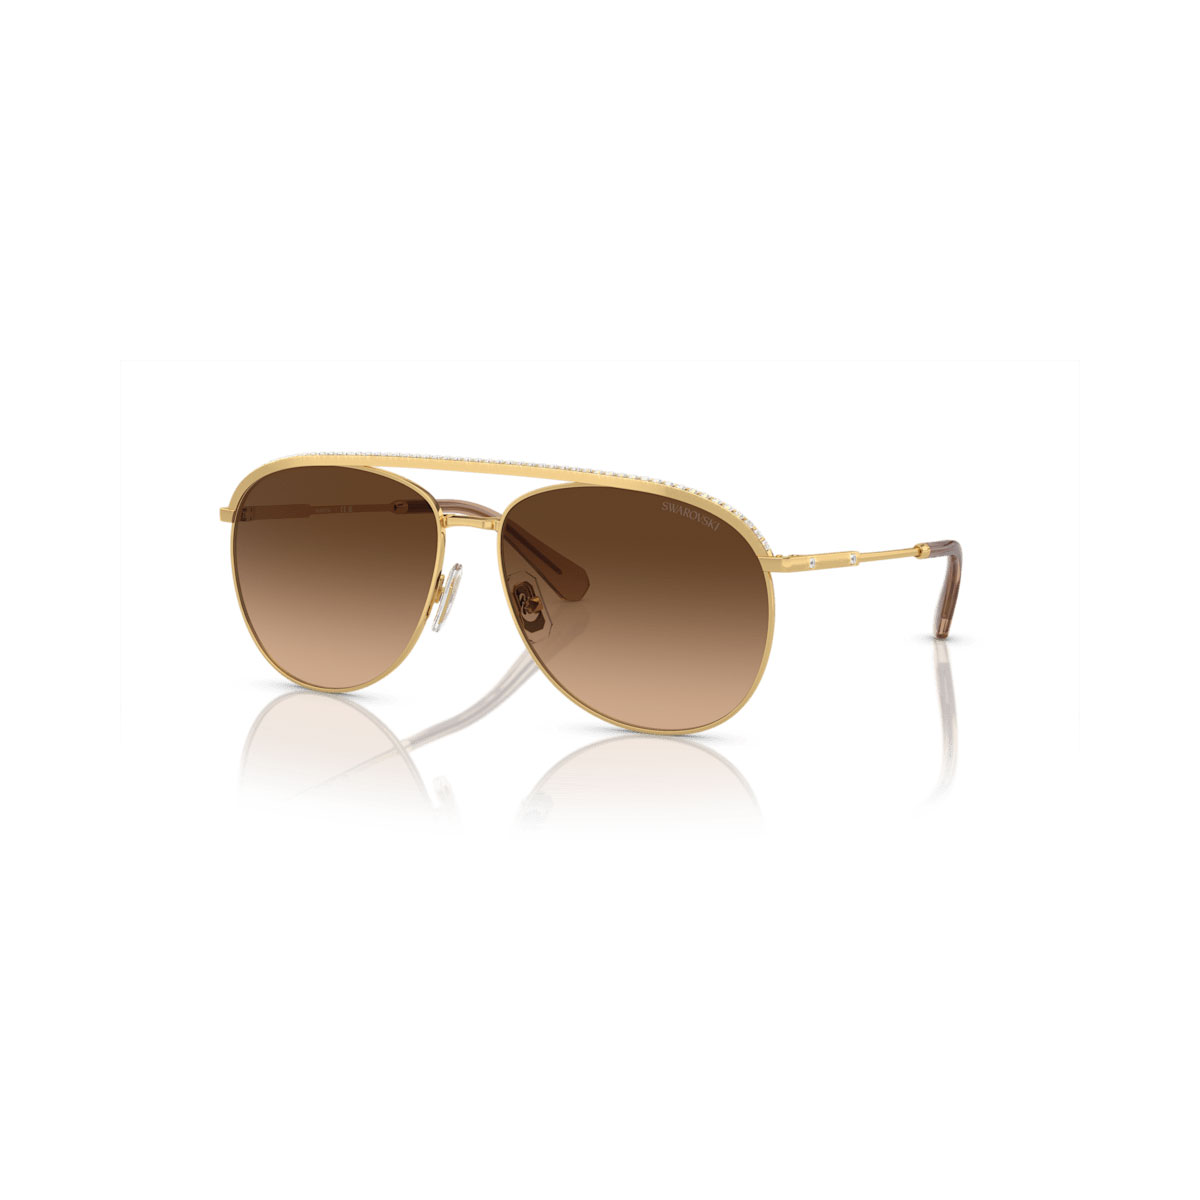 Swarovski Sunglasses, Pilot shape, Brown